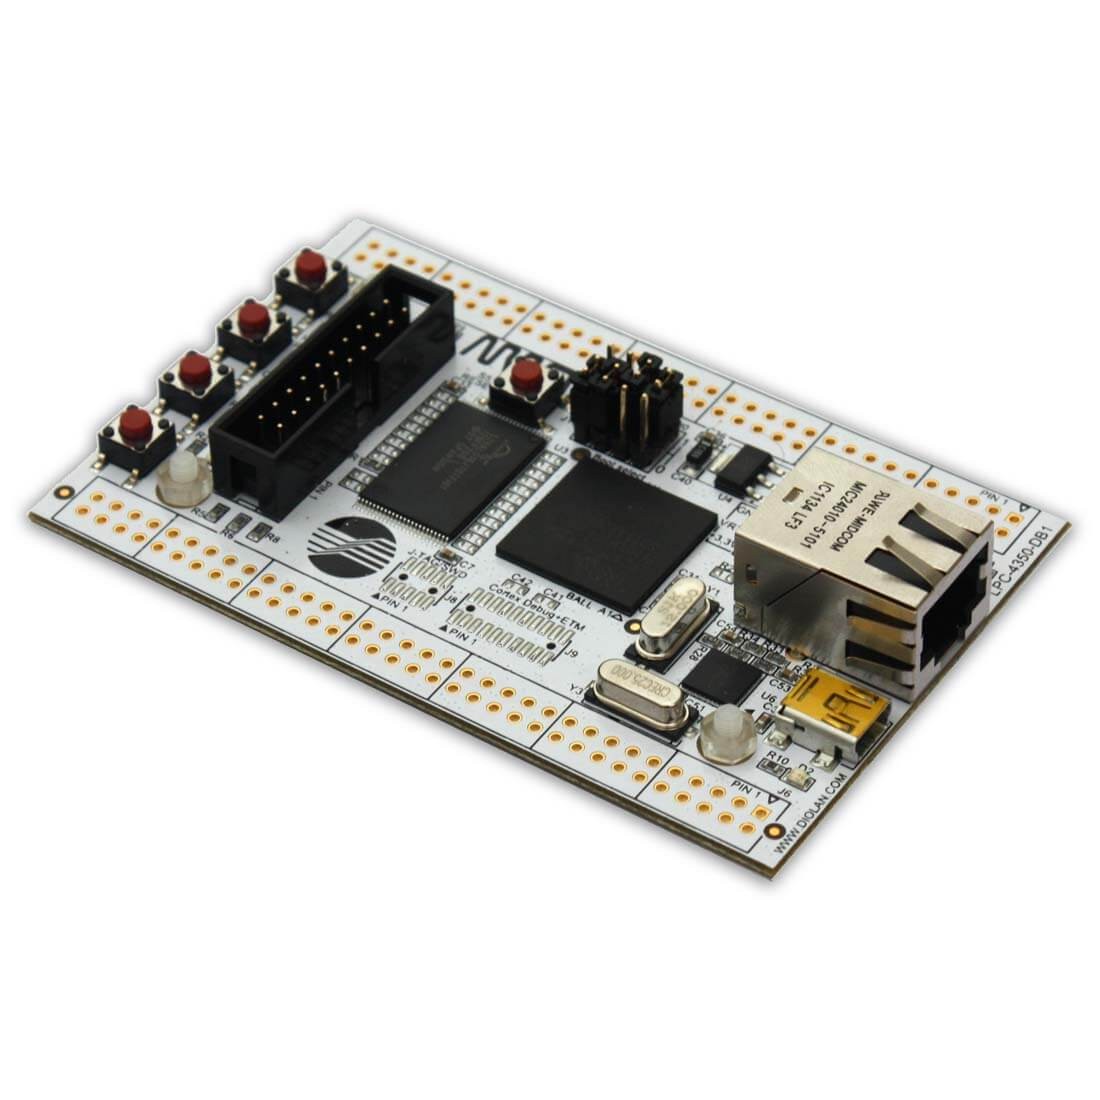 LPC4350-DB1 Dual-Core Cortex-M4 and Cortex-M0 Development Board